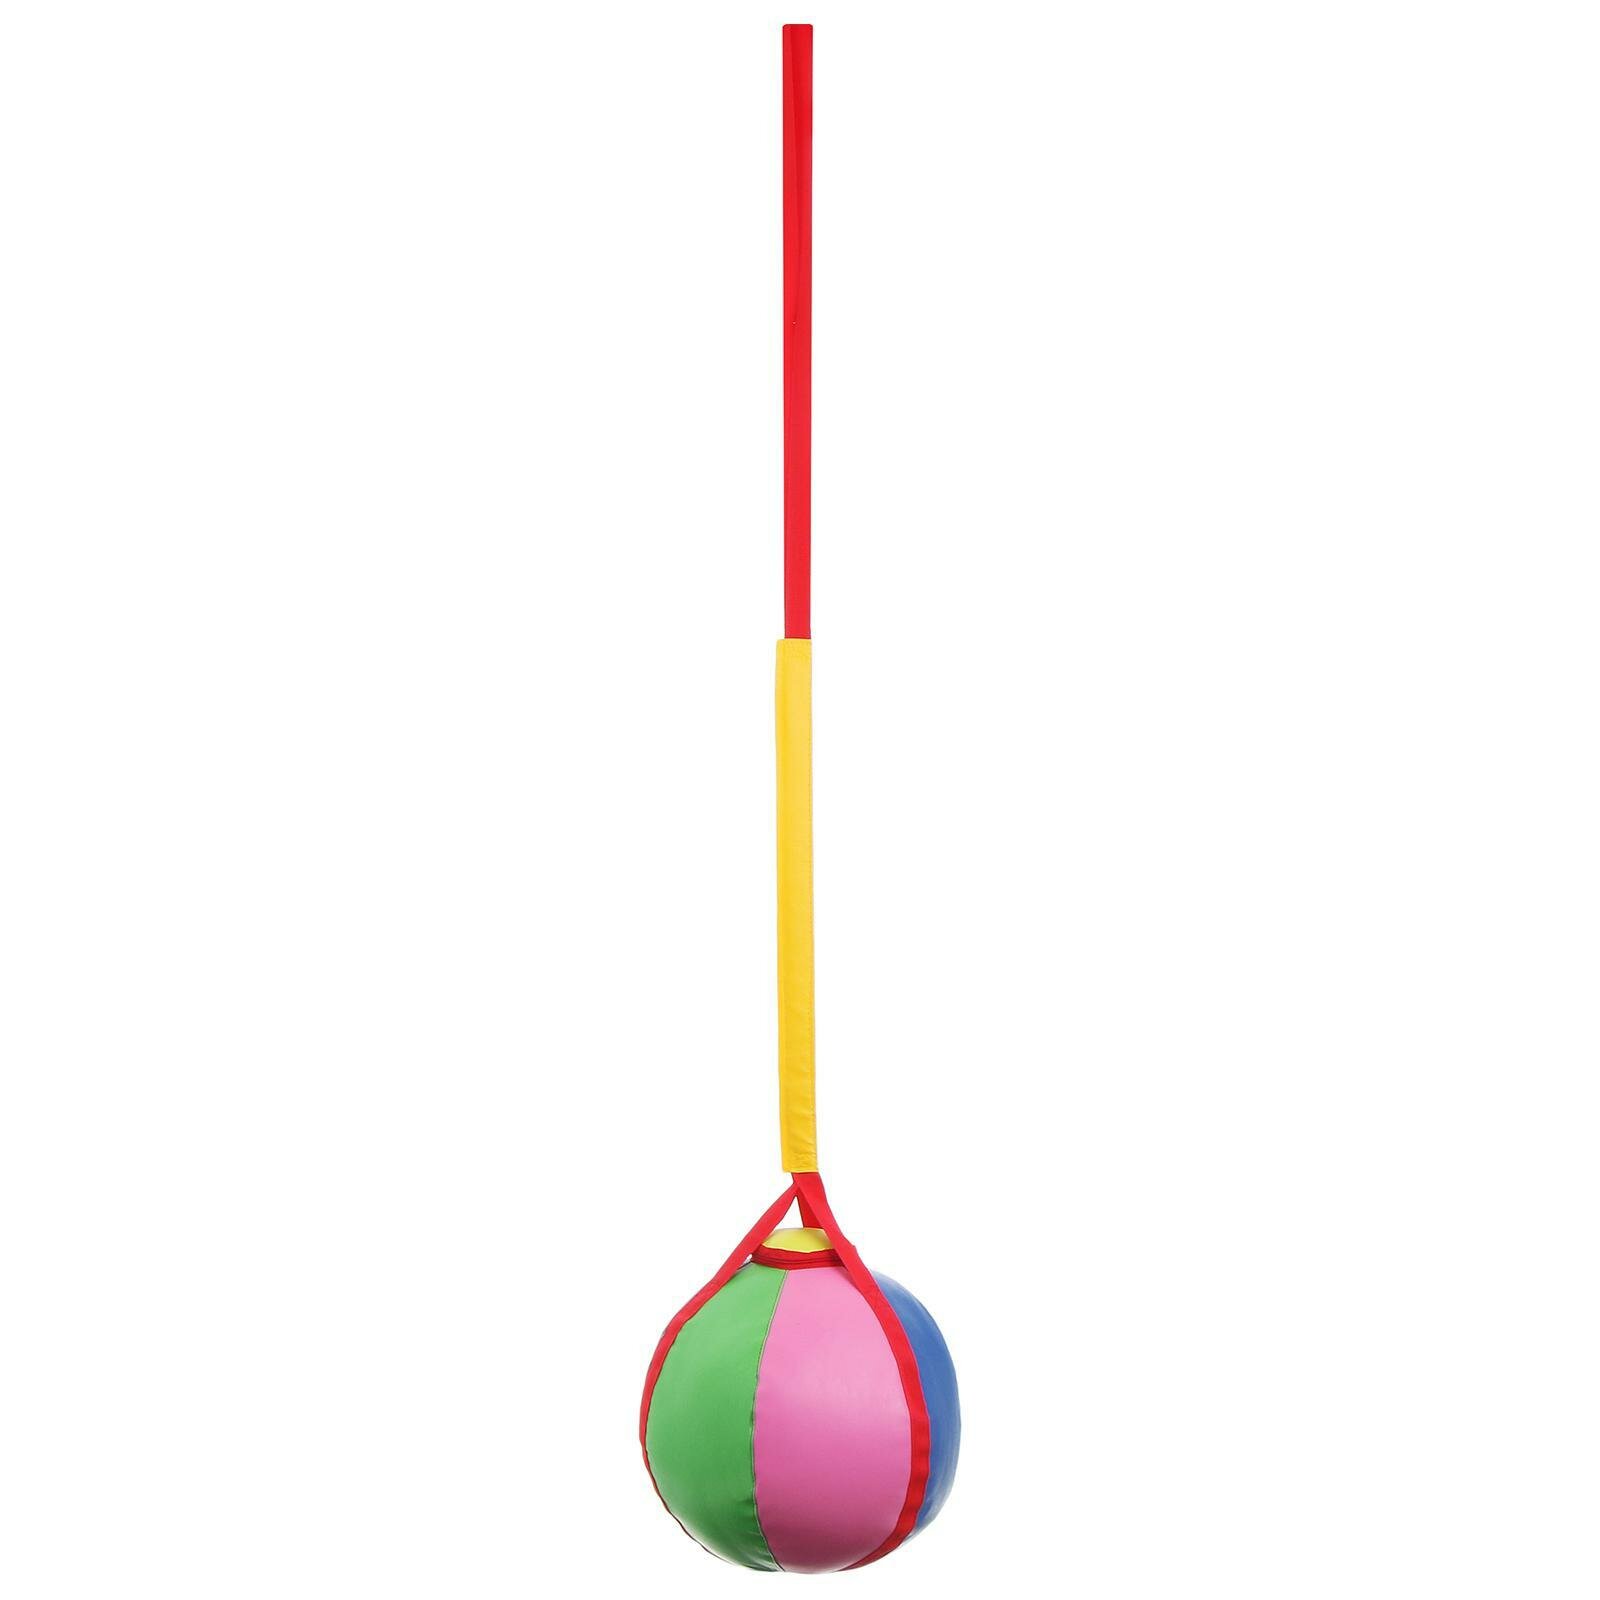 Тарзанка-мяч, 35х35х150 см, цвета микс